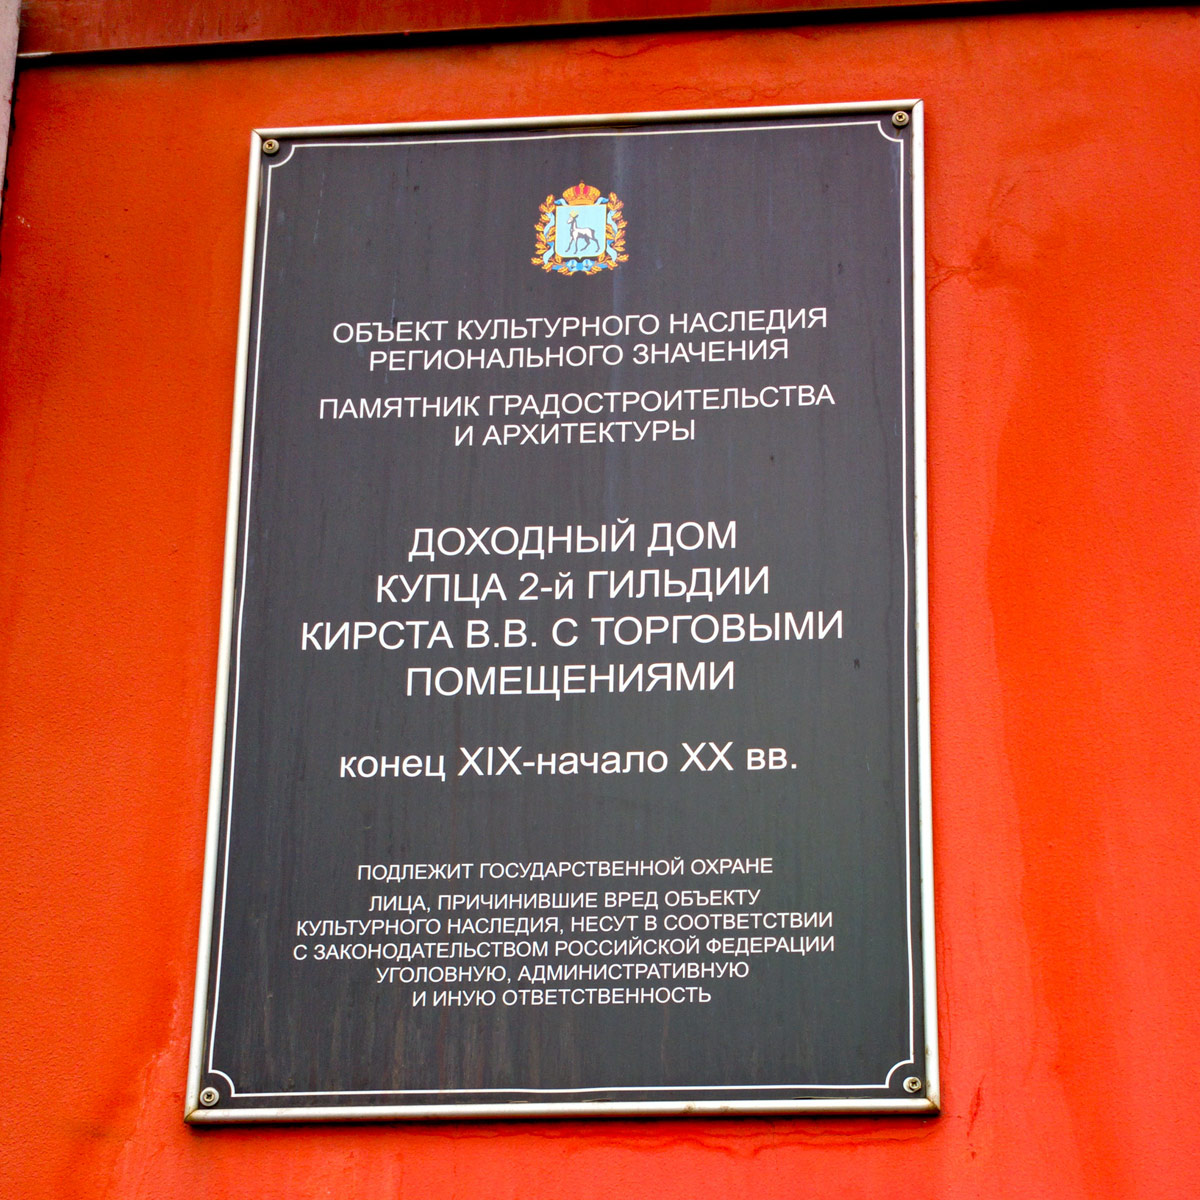 Samara, Галактионовская улица, 74 / Улица Льва Толстого, 66. Samara — Protective signs